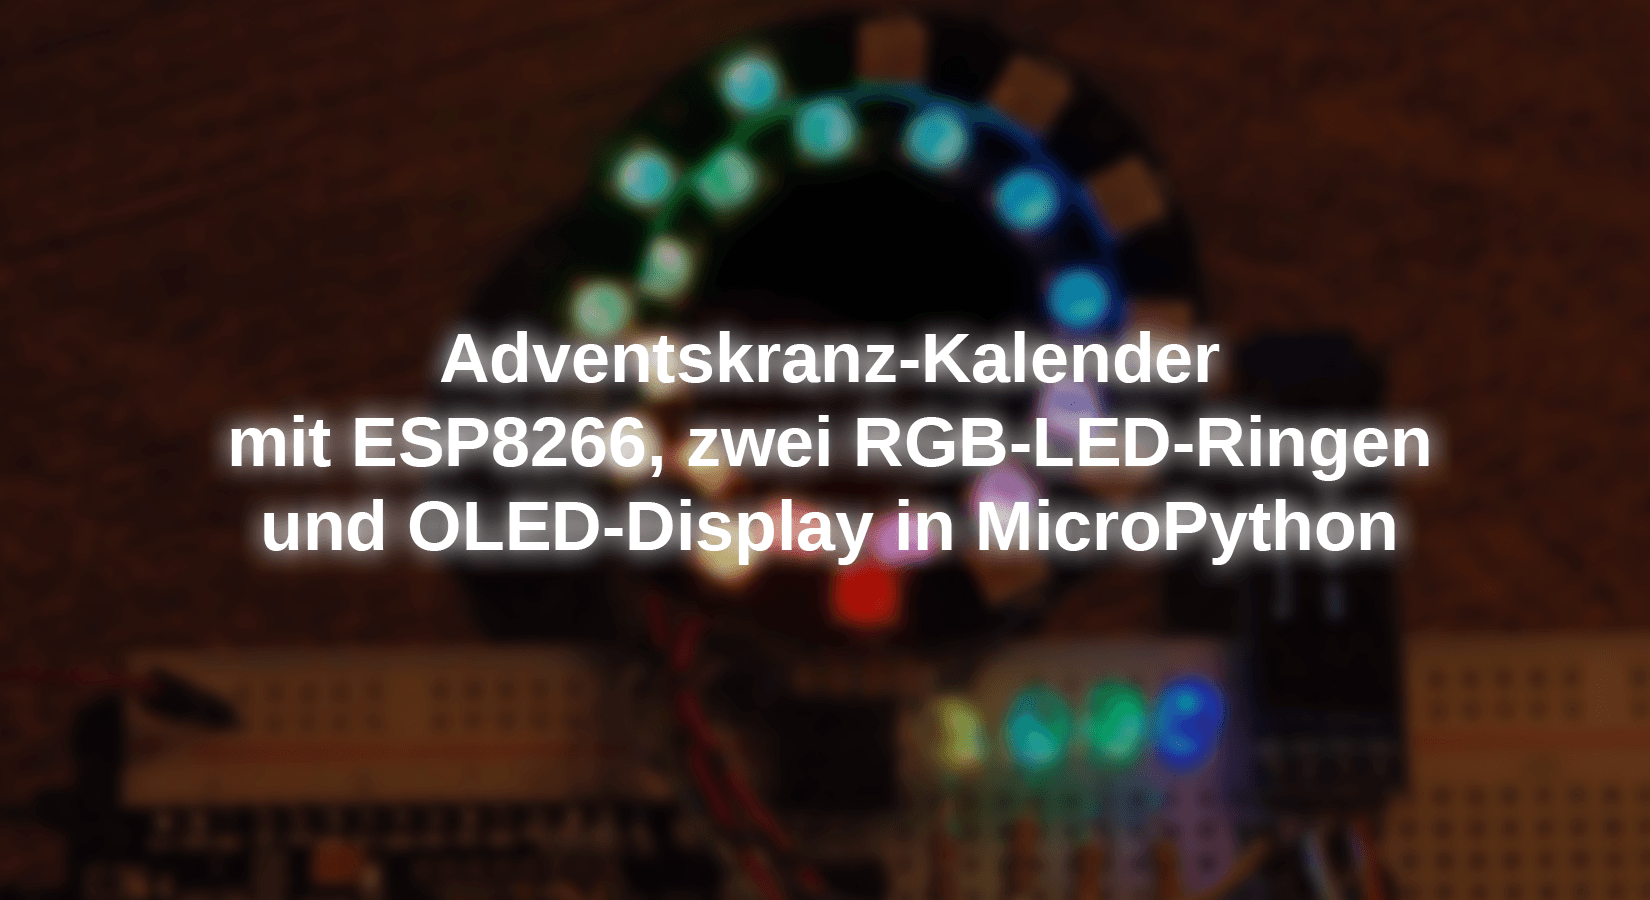 Adventskranz-Kalender mit ESP8266, zwei RGB-LED-Ringen und OLED-Display in MicroPython - AZ-Delivery